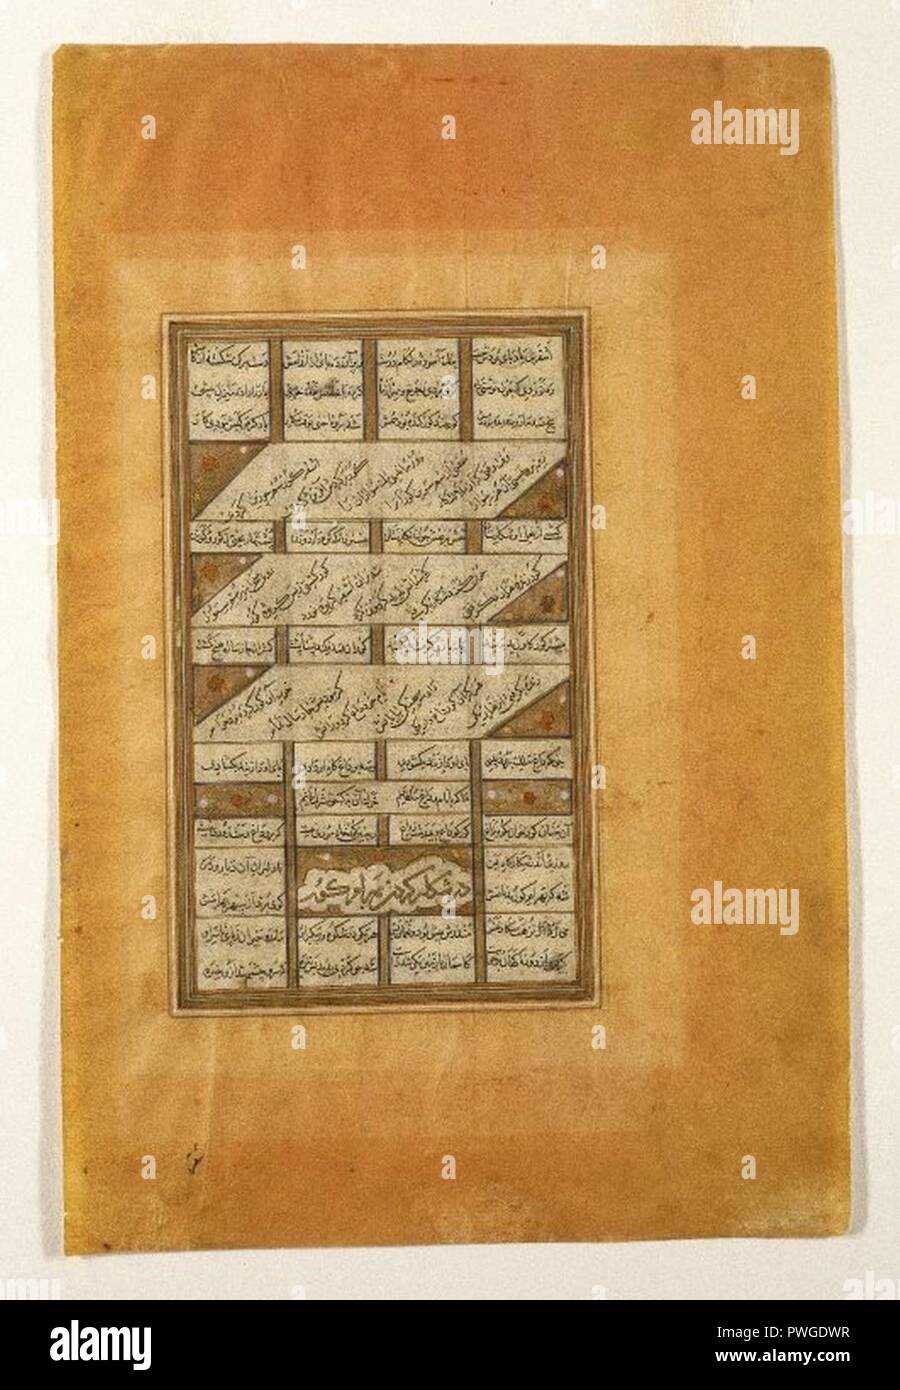 Bahram Gur bei der Jagd Seite aus der Haft paykar (Sieben Porträts) von einem Manuskript der Khamsa (Quintett) von Nizami (d. 1209). Stockfoto